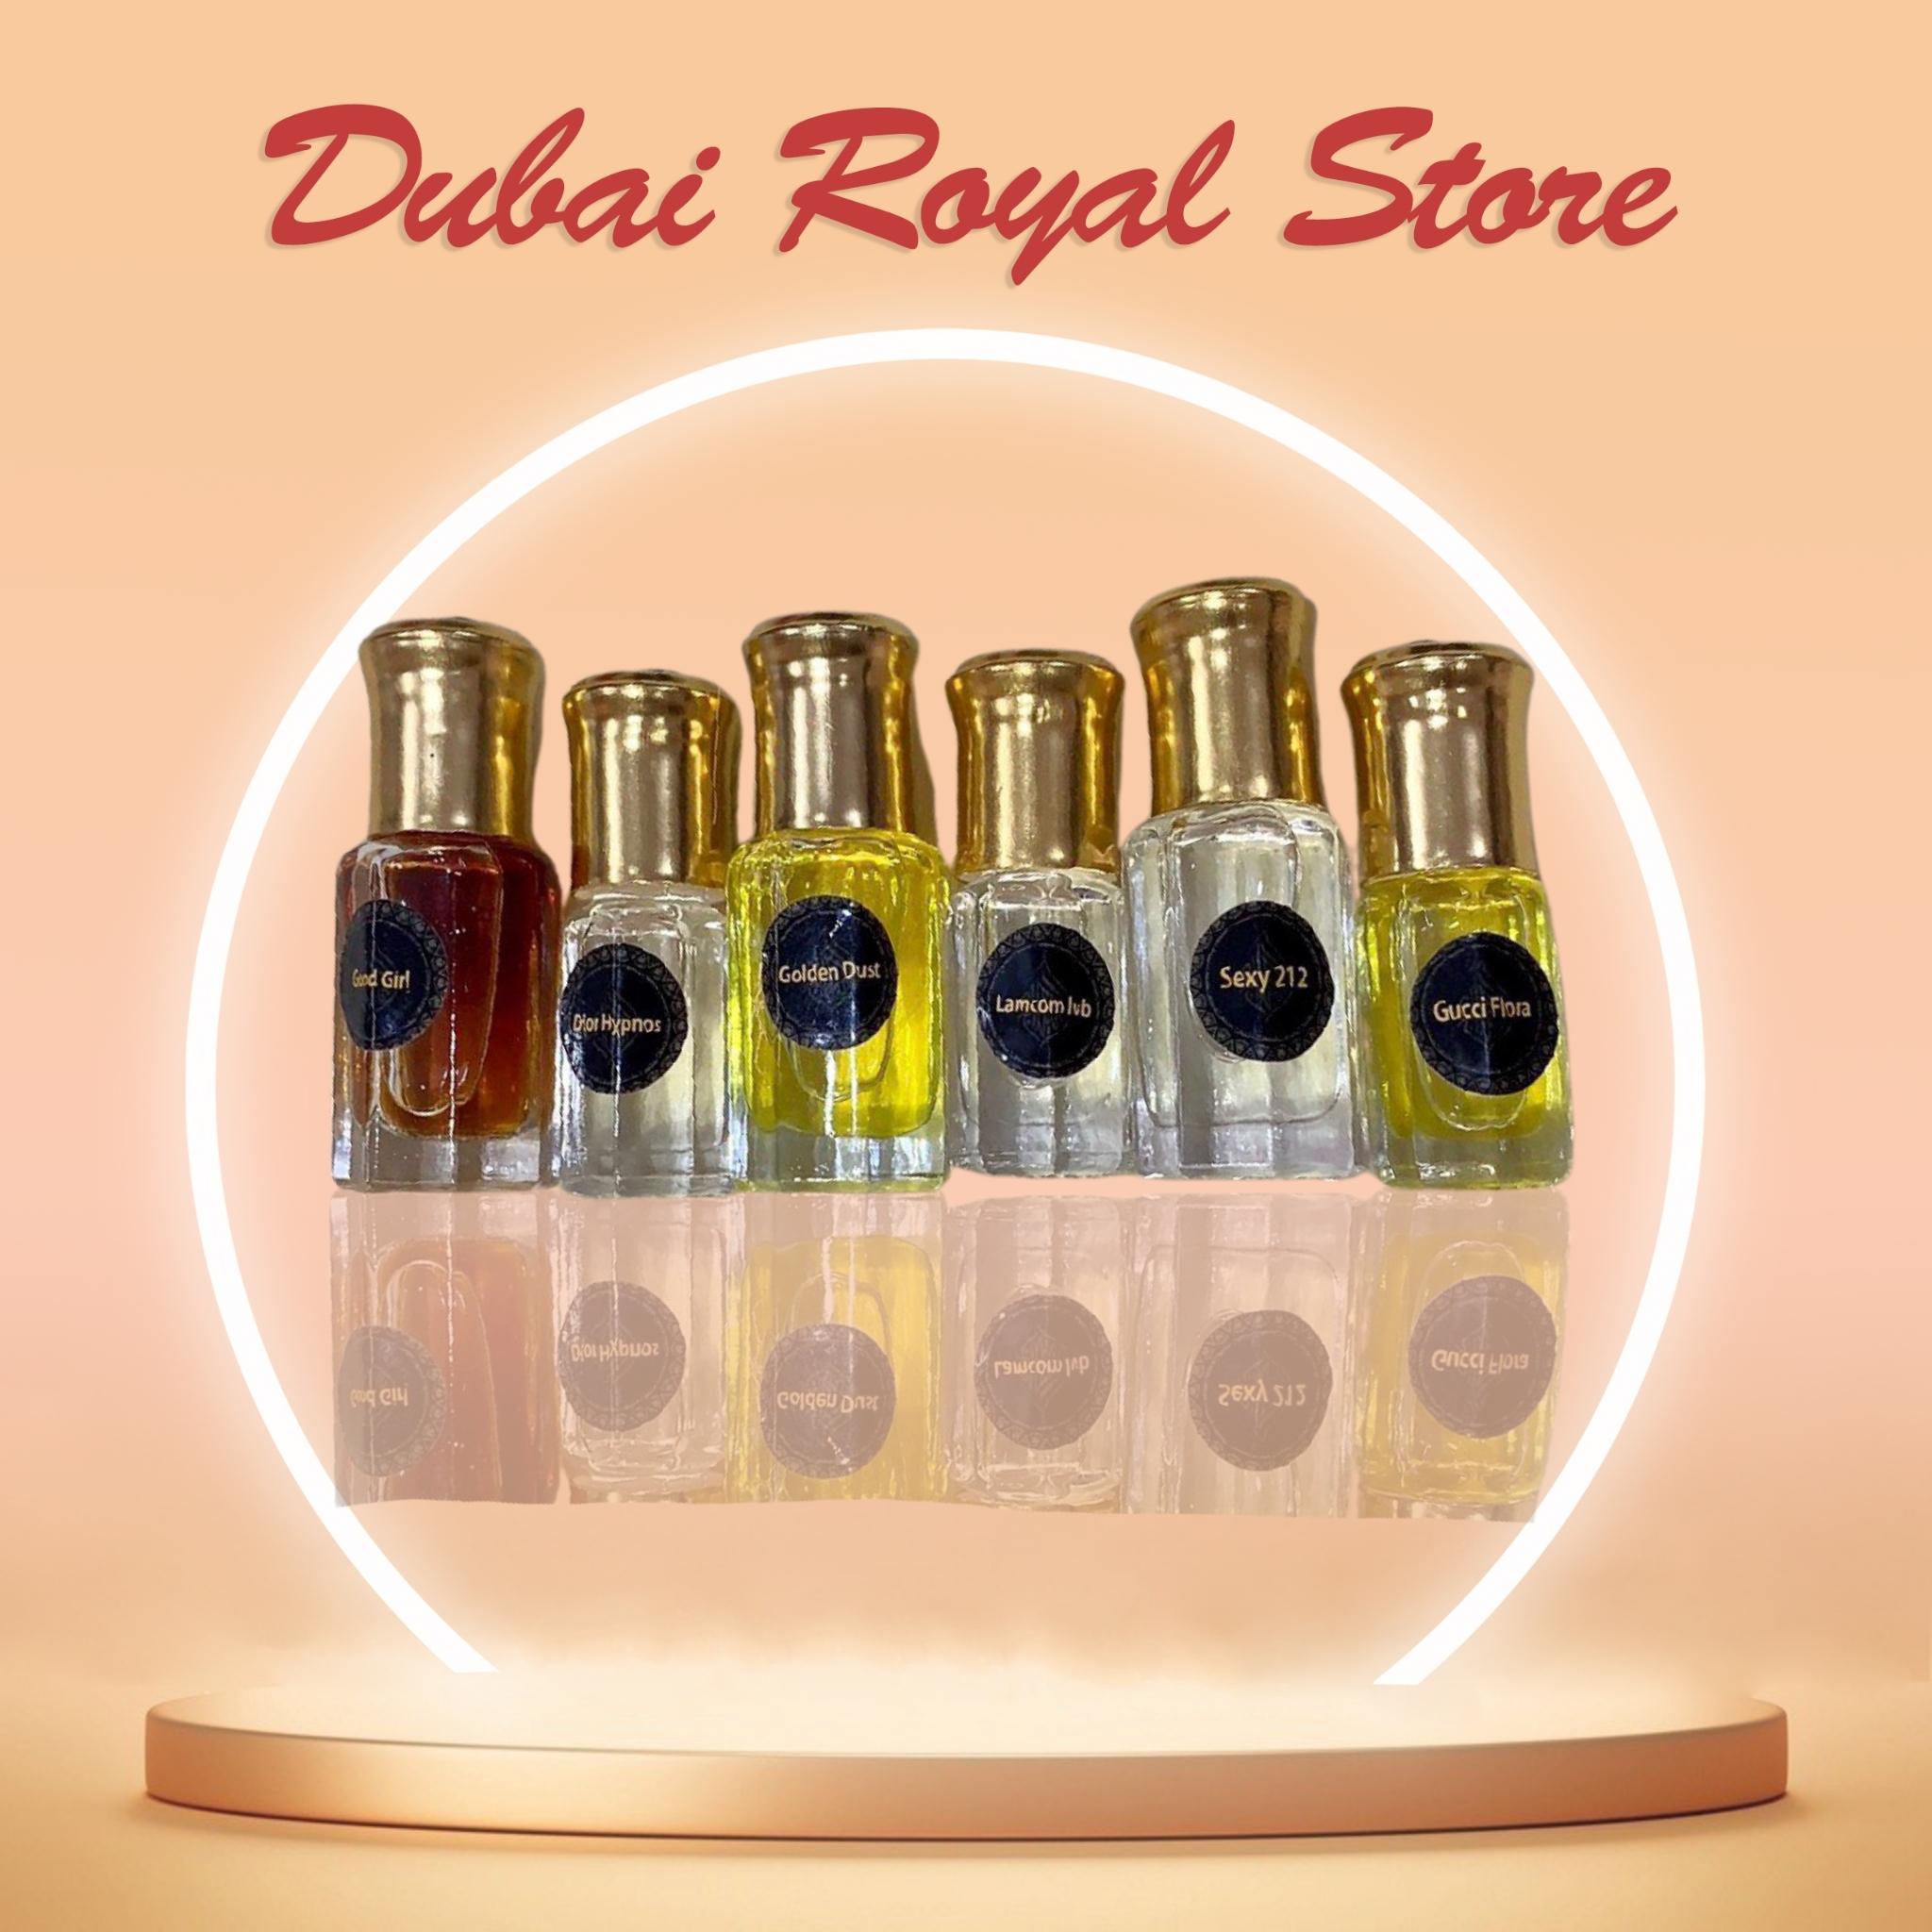 Tinh dầu nước hoa Dubai dạng lăn mini mẫu thử hàng cao cấp 1ml 3ml 7ml